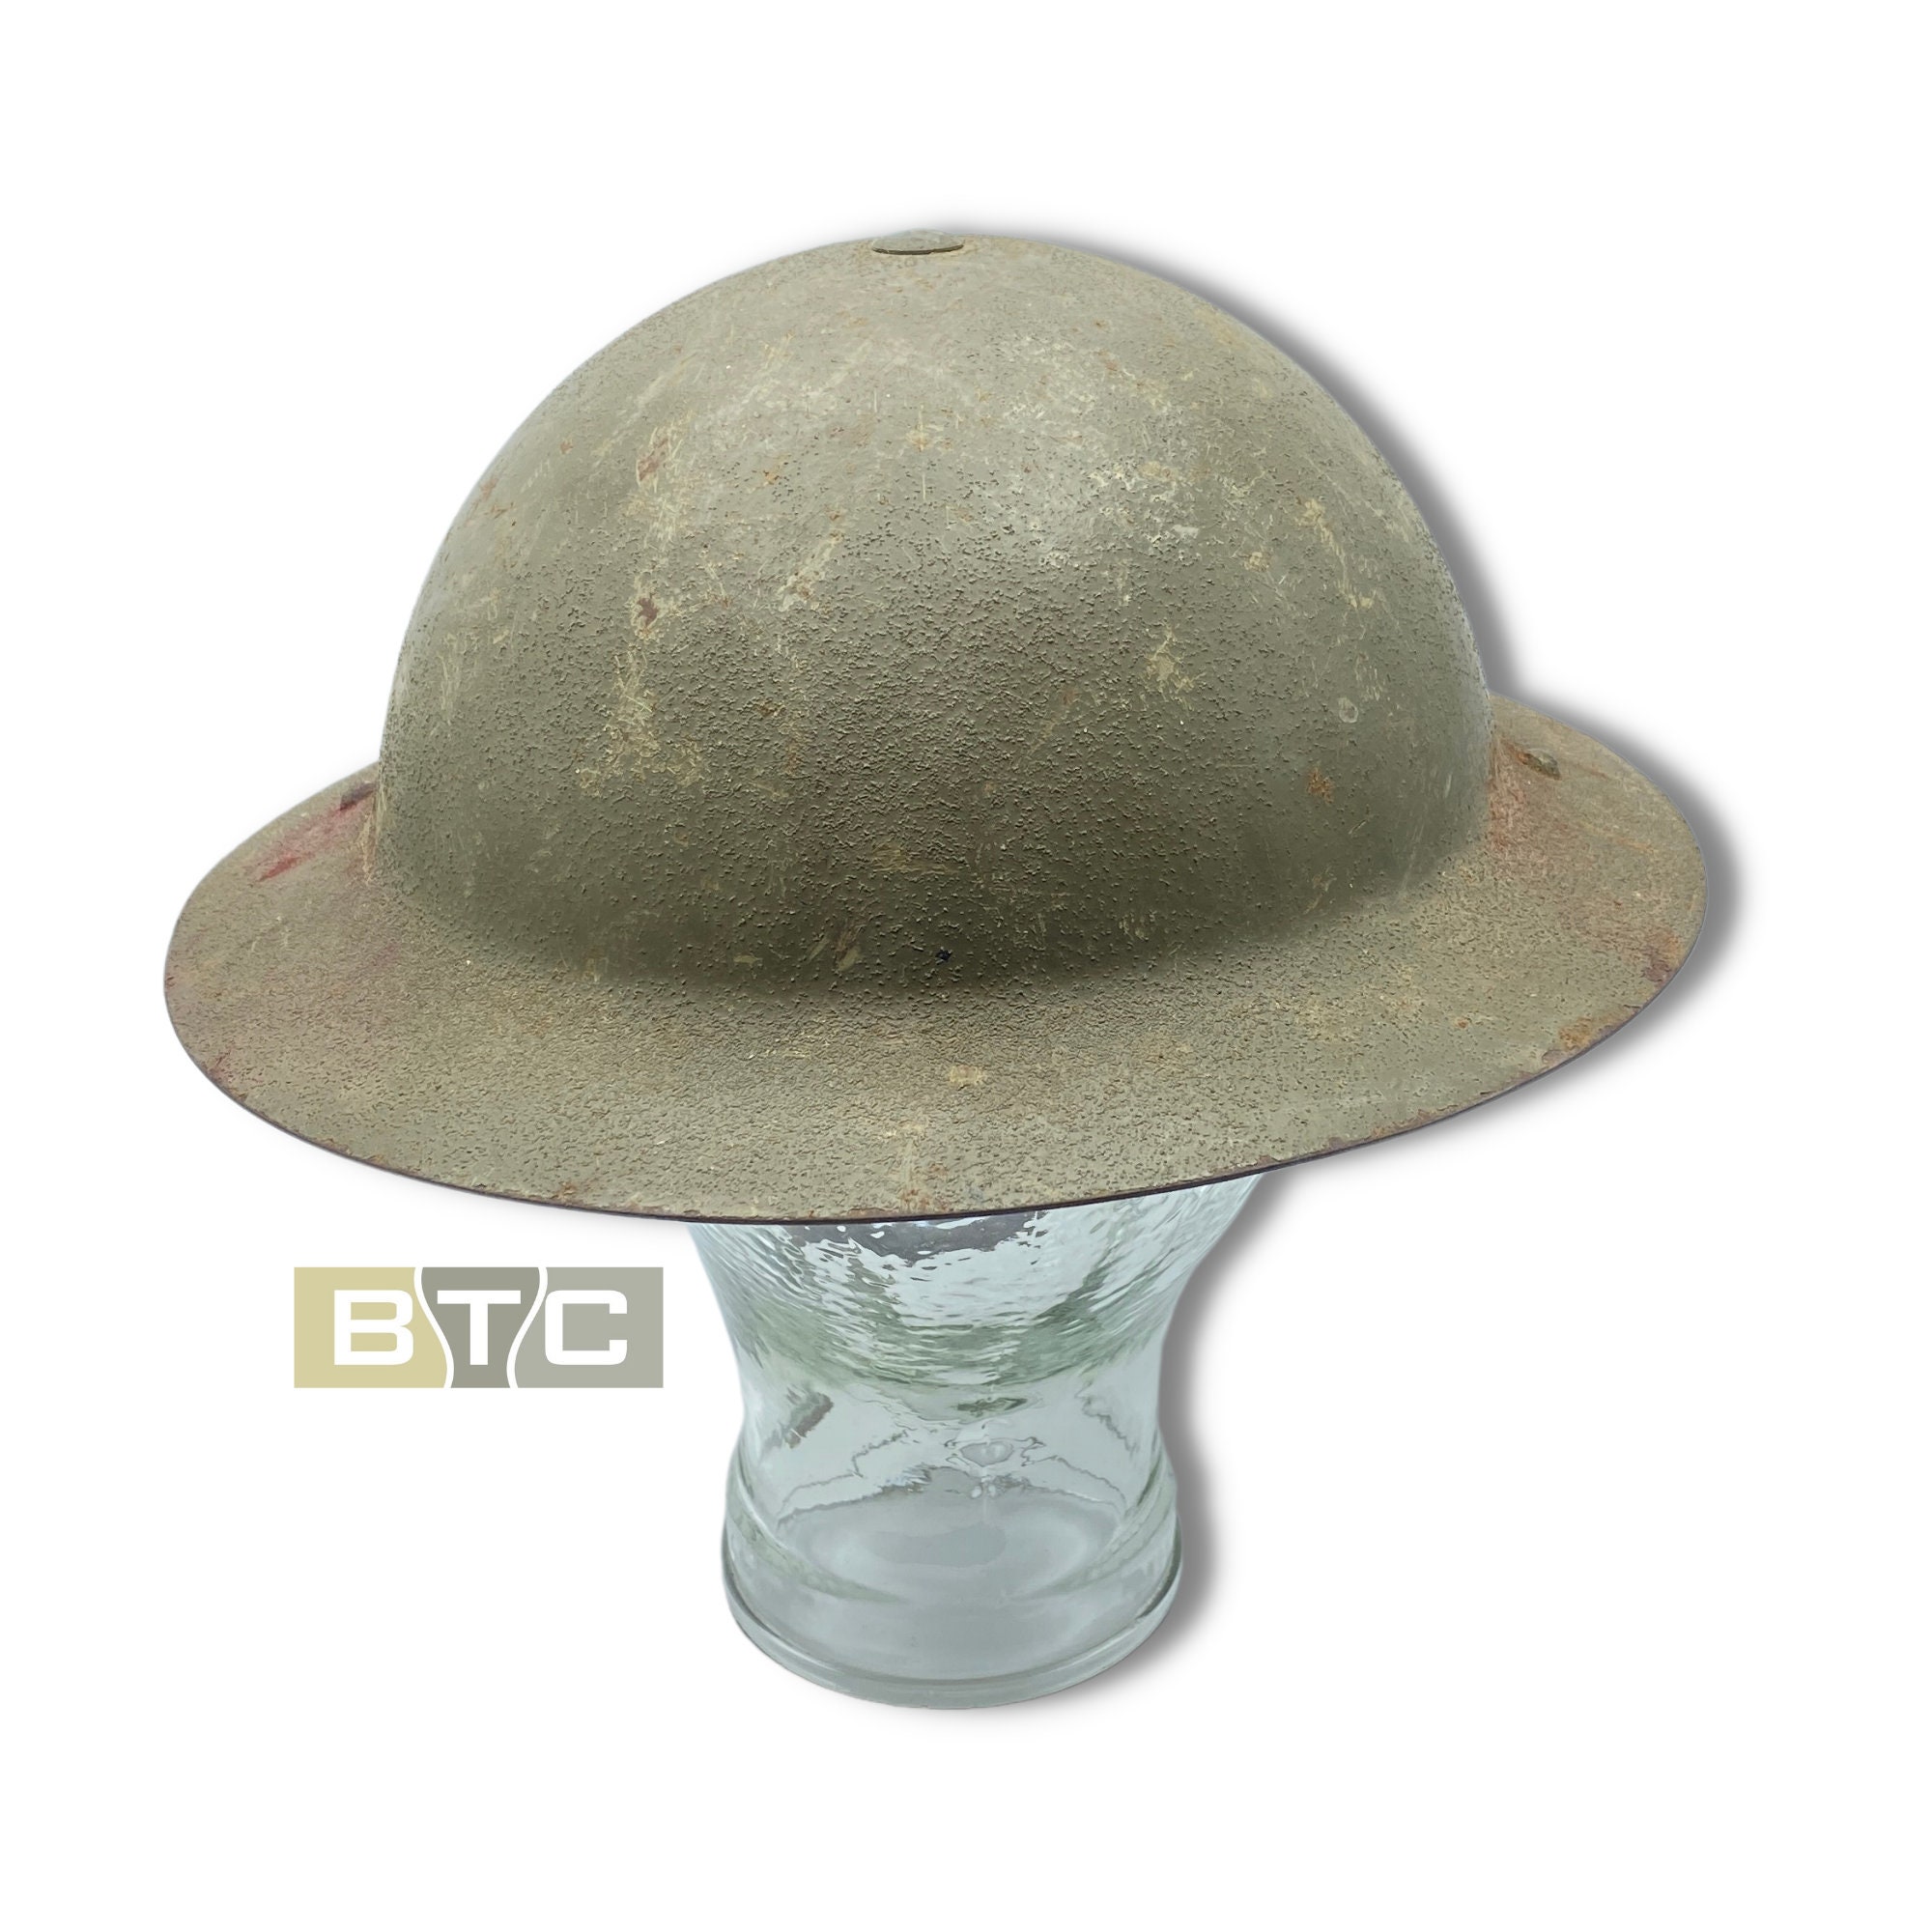 Casco australiano in acciaio dell'esercito WW2 Originale Accessori Cappelli e berretti Caschi Elmetti militari RAAF Contrassegnato 1941-462 Squadron 